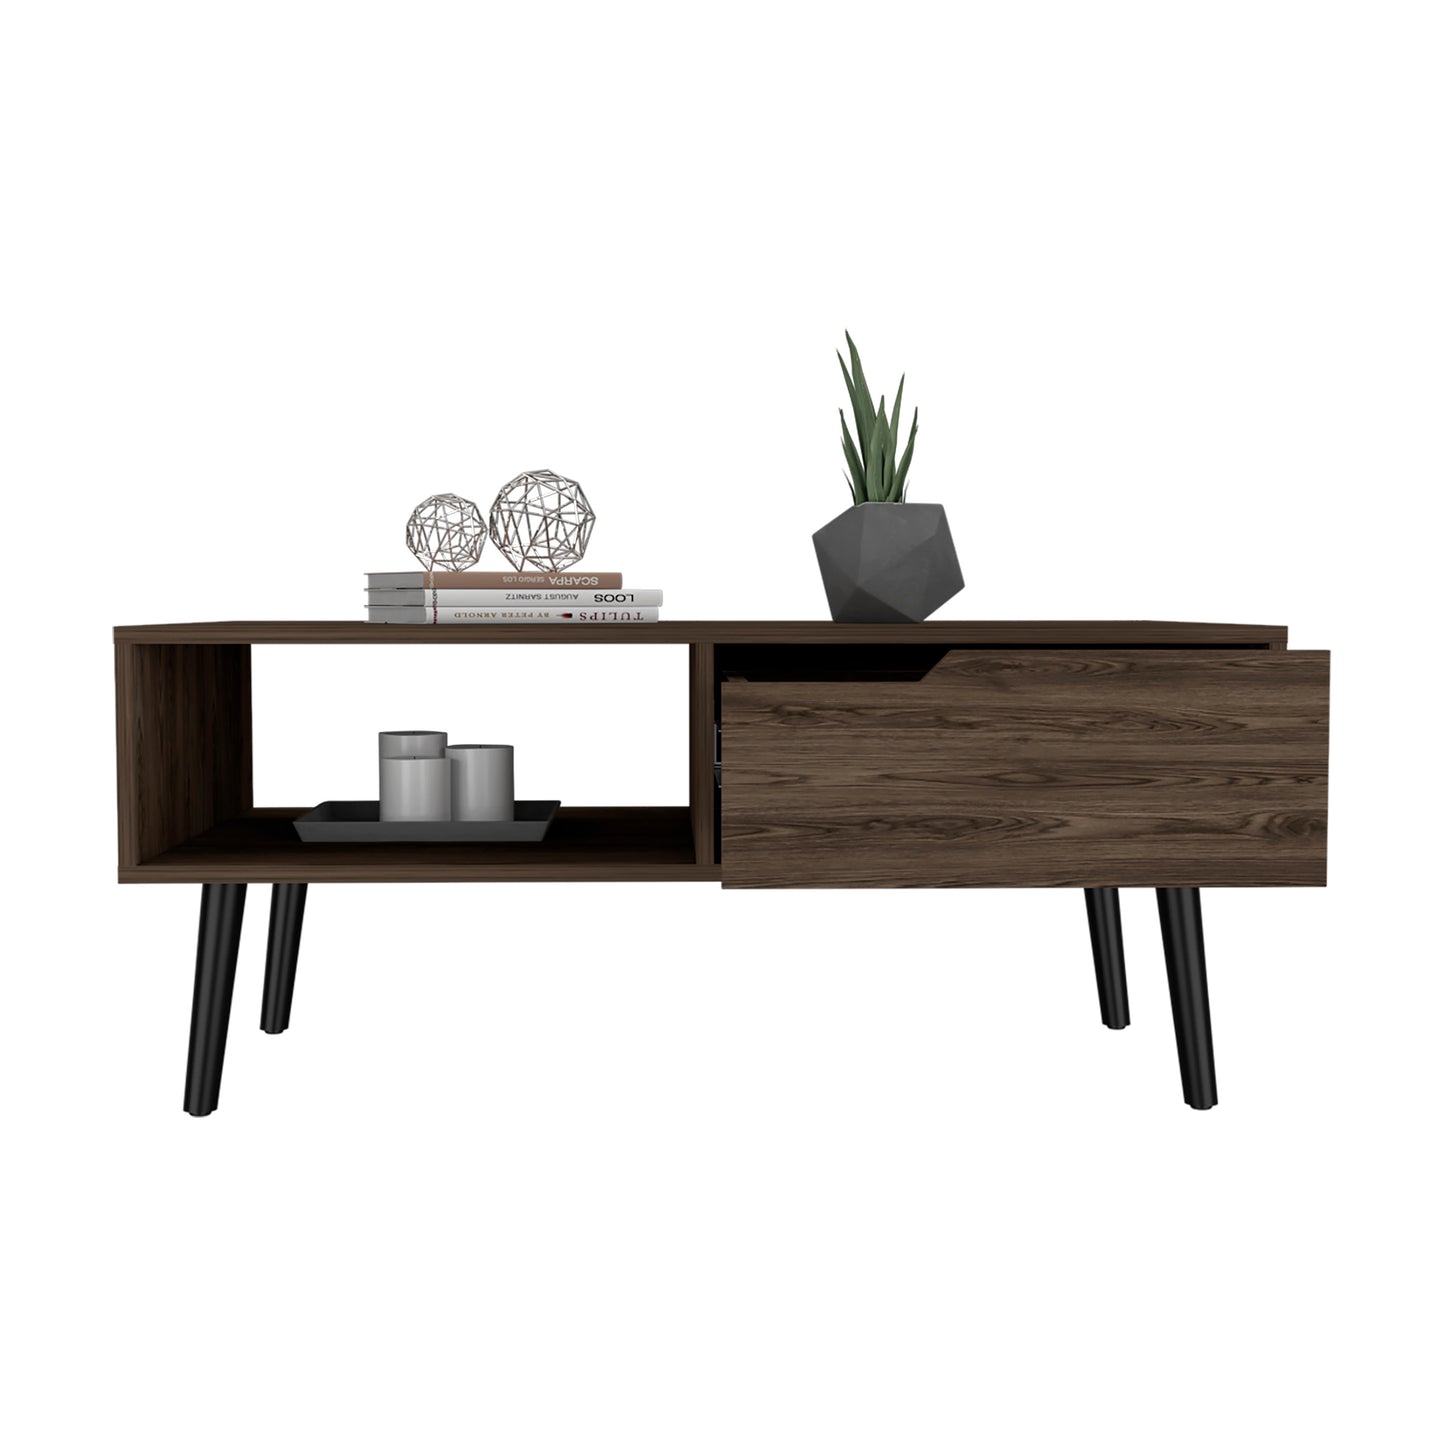 Sophisticated Dark Walnut Coffee Table - Elegant Design, Sturdy Build